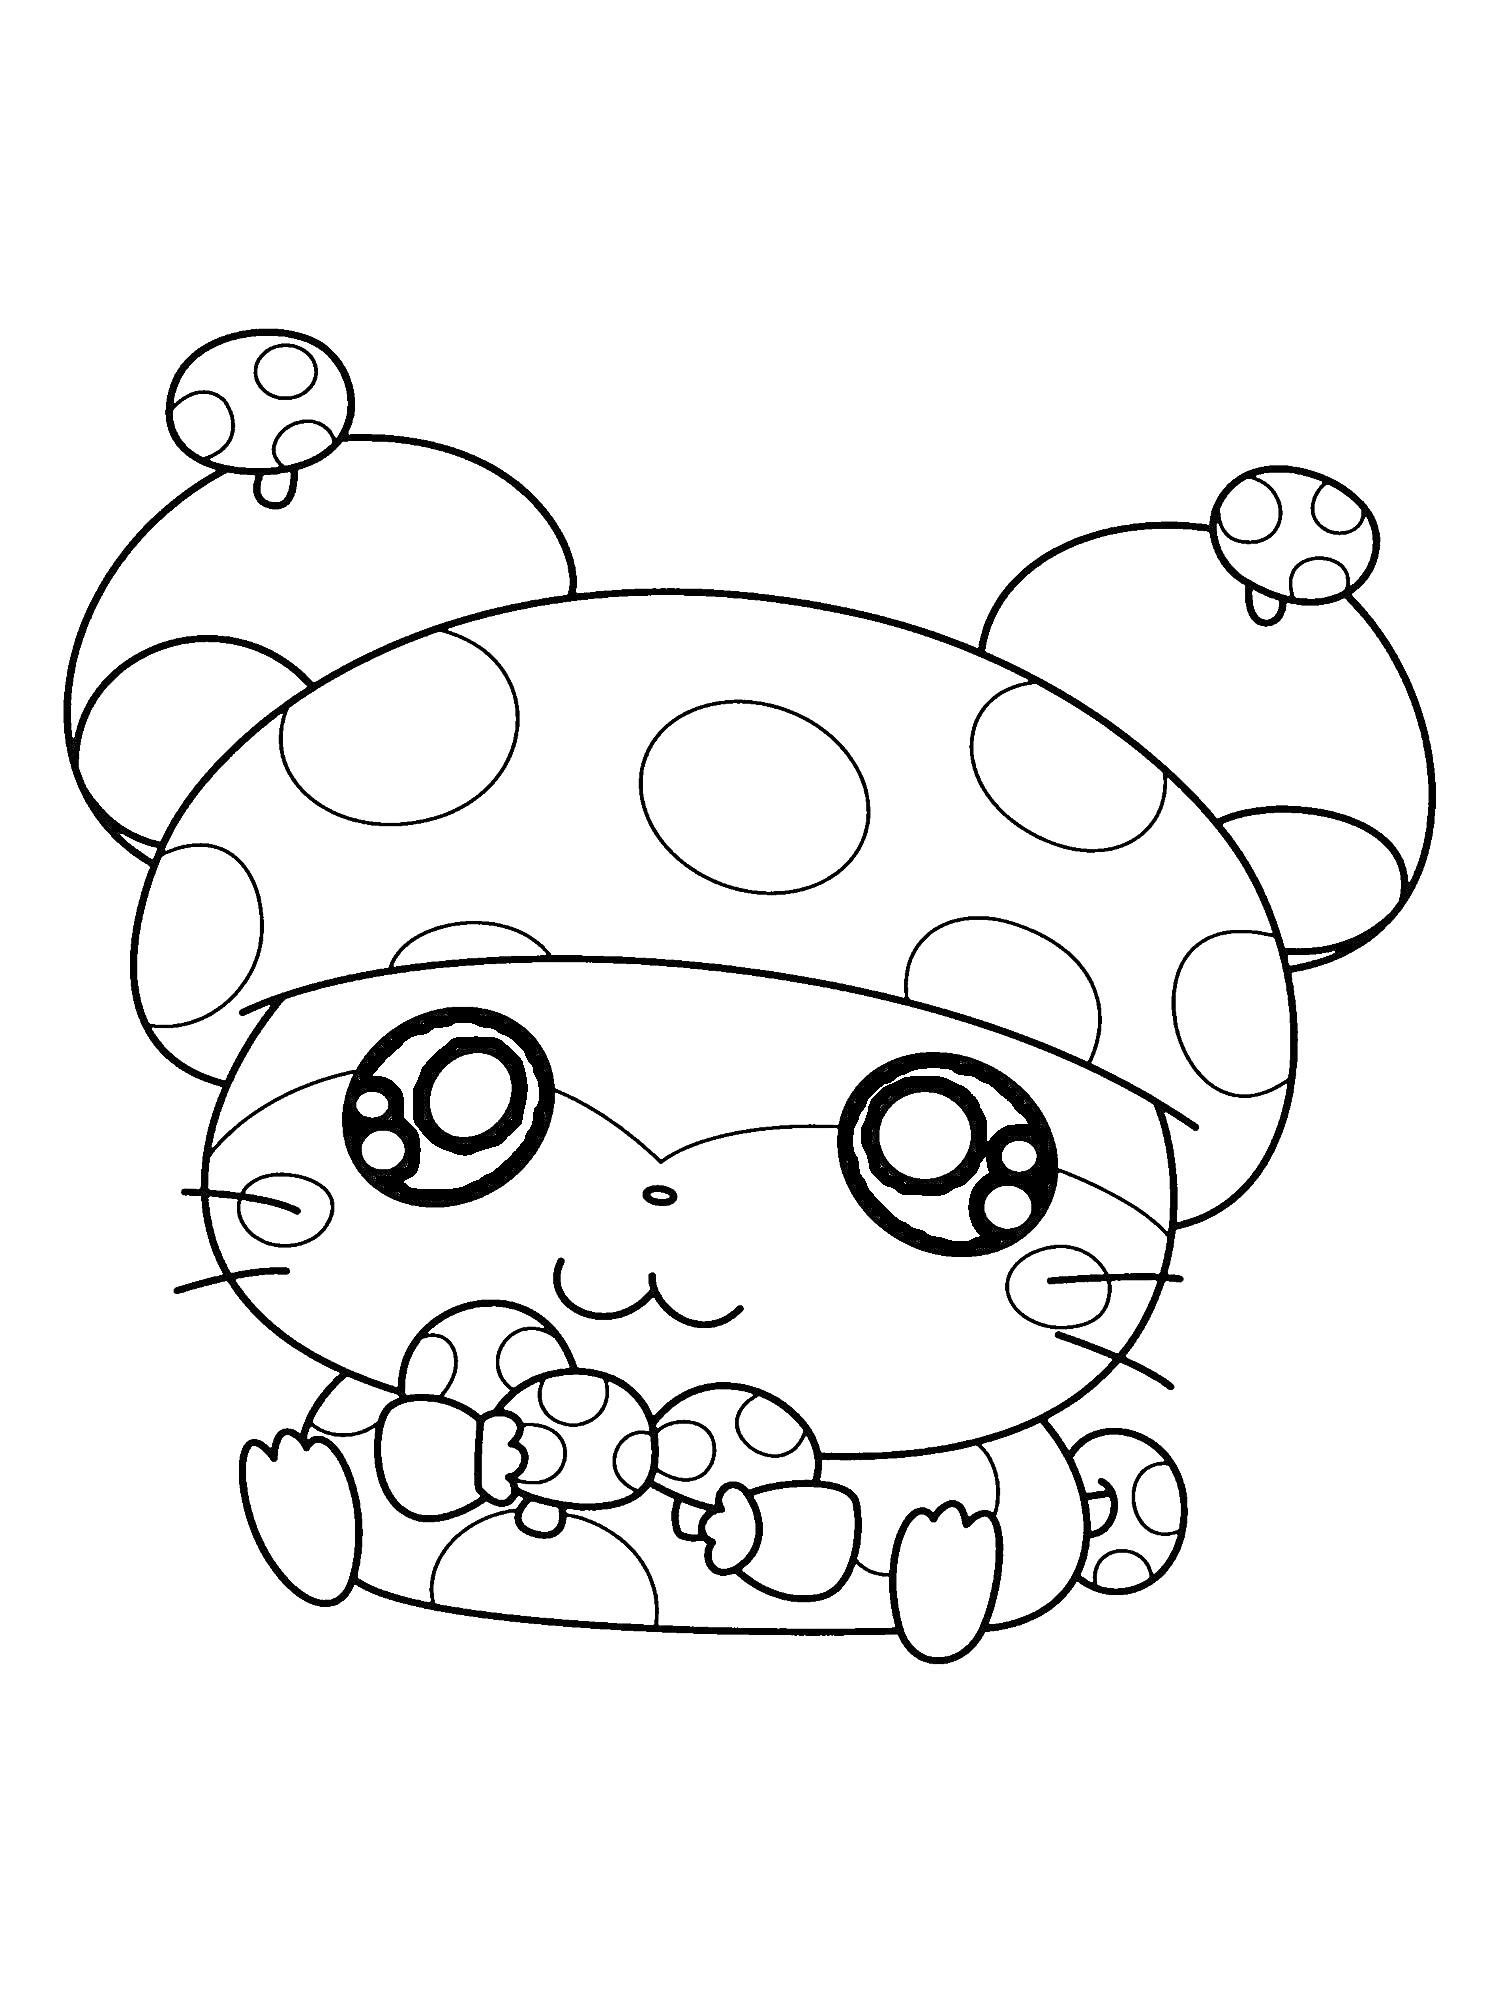 Раскраска Милая мышка с большими глазами в шапке с горошком, держащая грибы